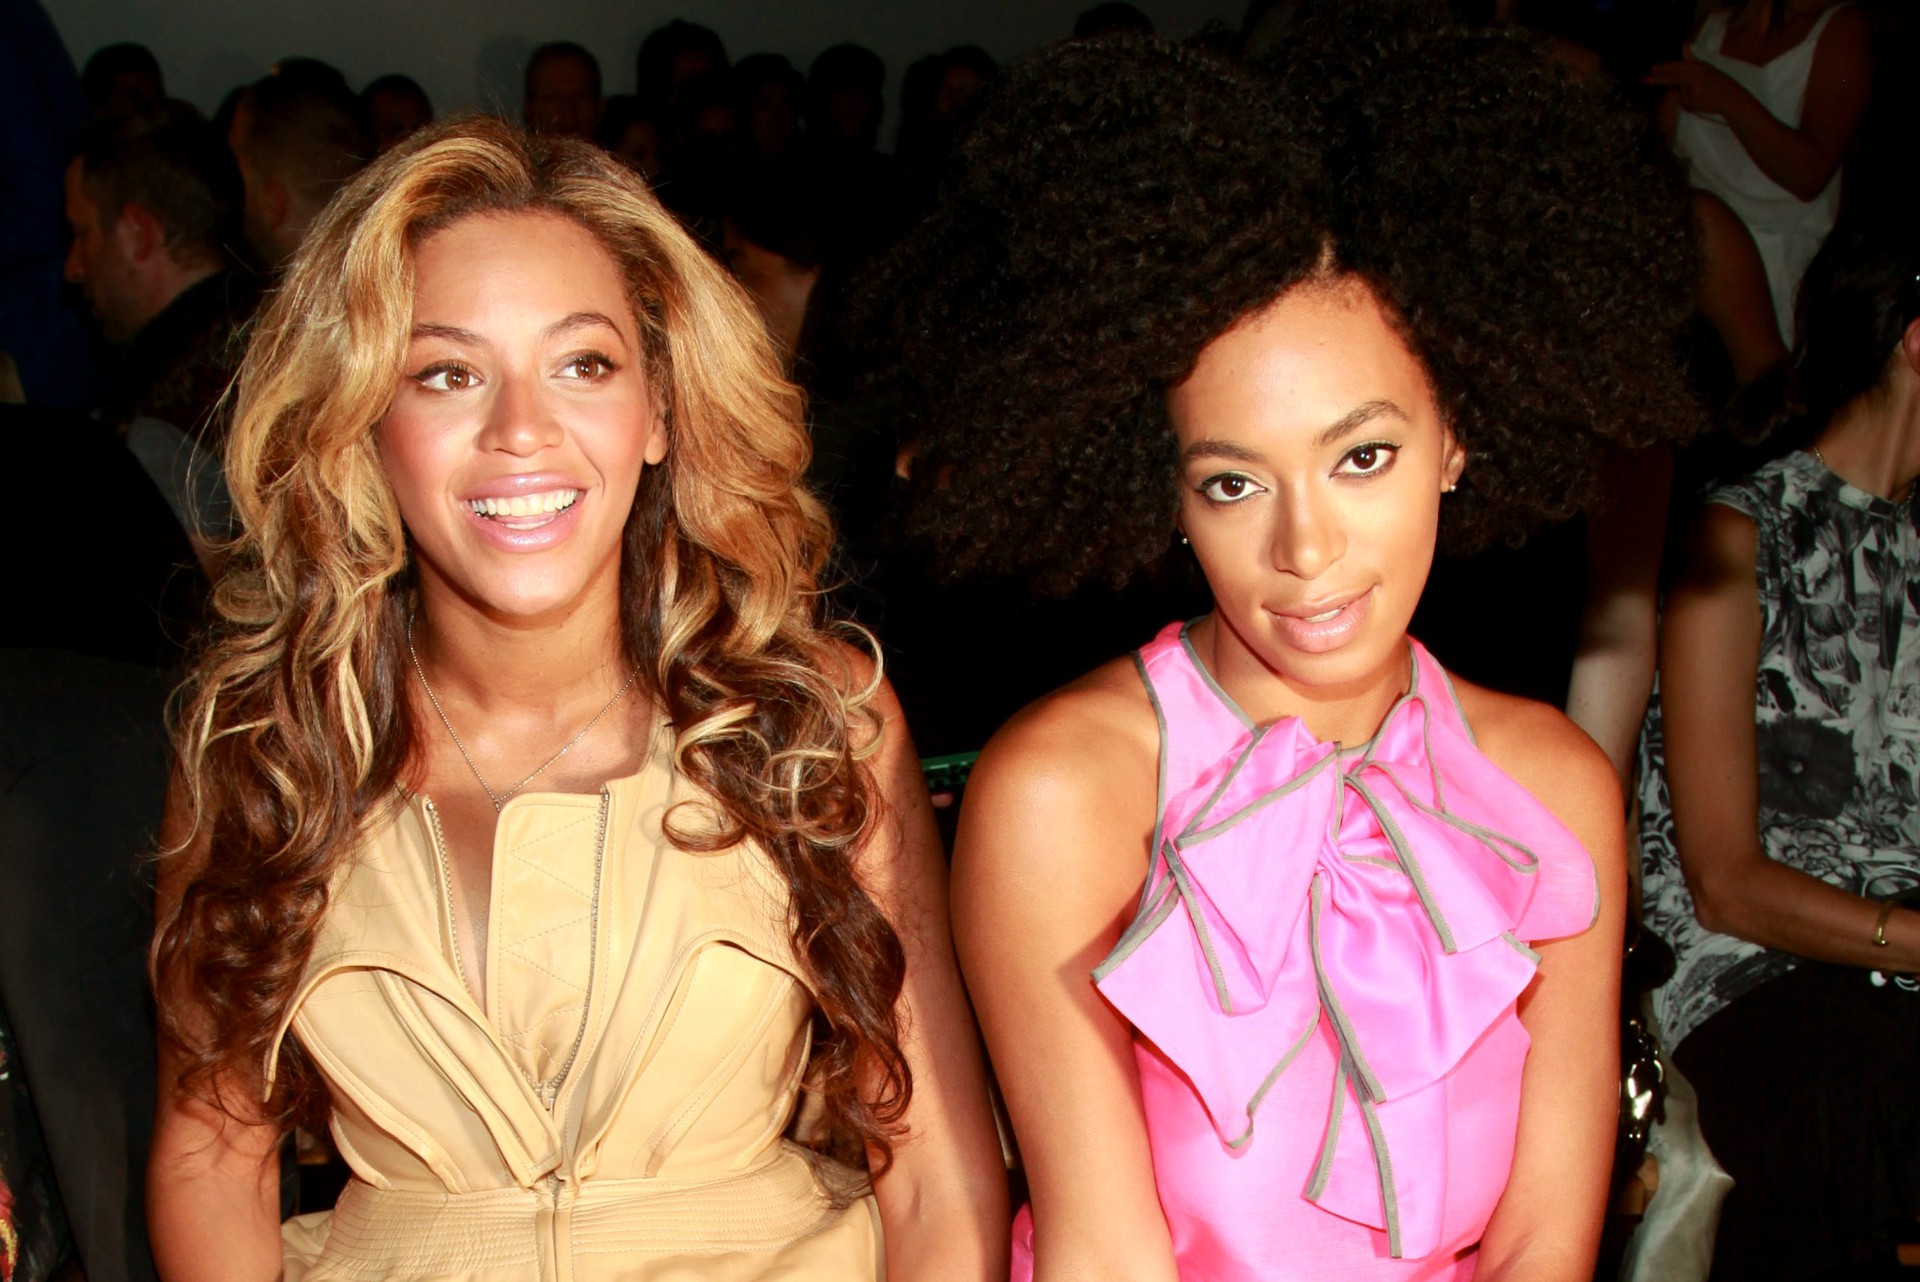 À esquerda, Beyoncé, de 32 anos. E a direita, Solange Knowles, de 28 anos. Ambas são cantoras. (E não vamos escrever mais nada porque, né, vai que a Solange se irrita). (Foto: Getty Images)